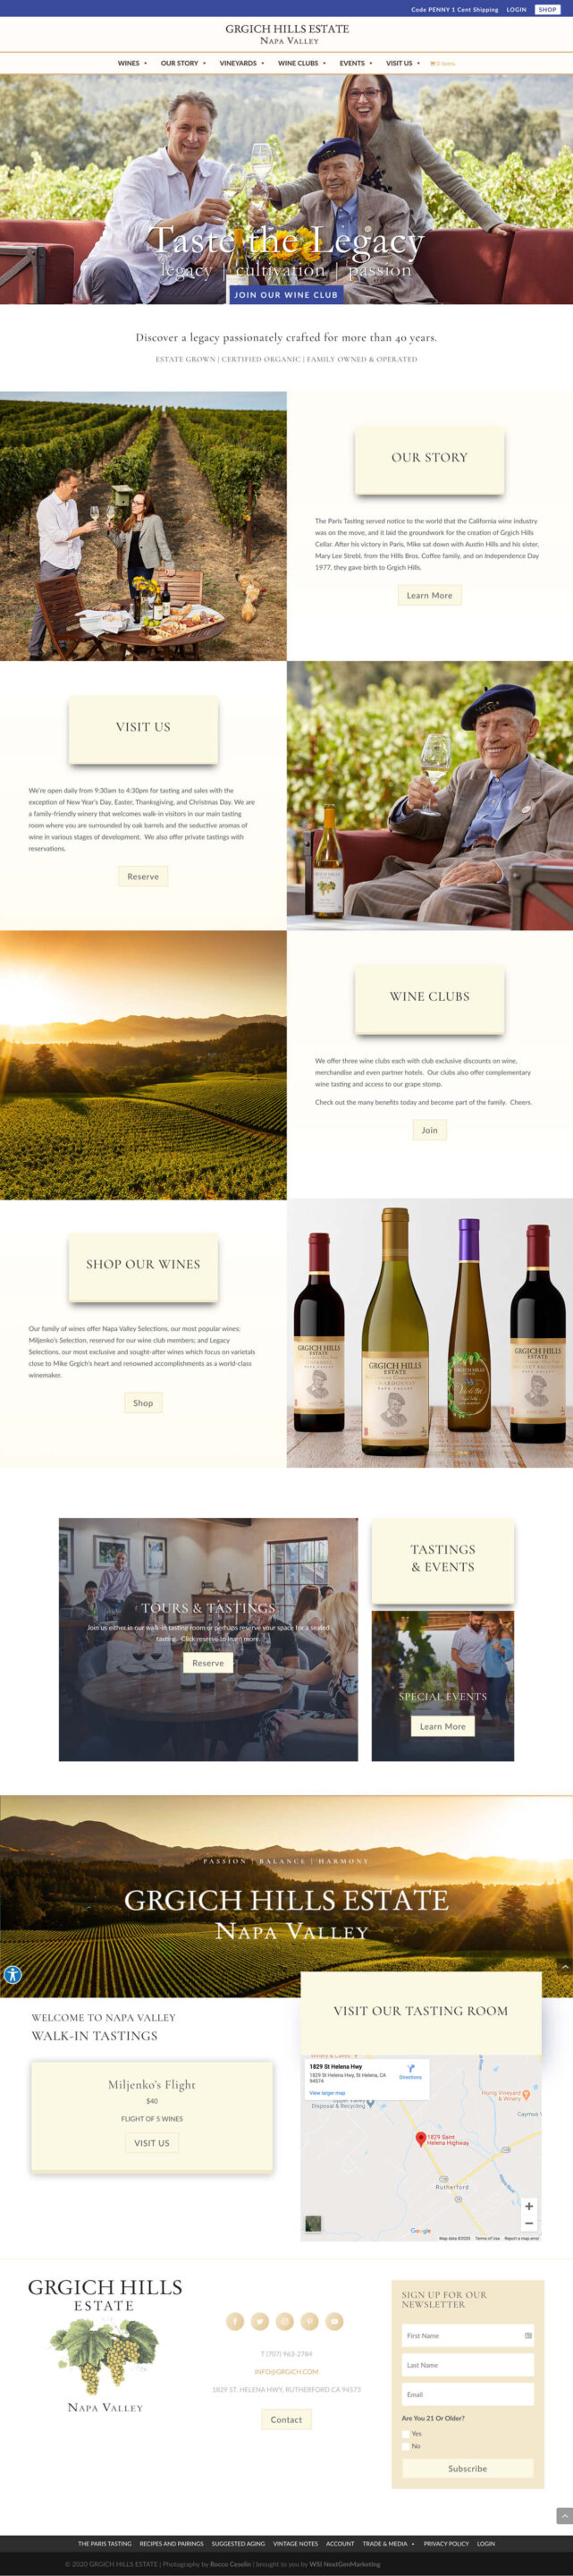 grgich-hills-homepage-winery-website-design